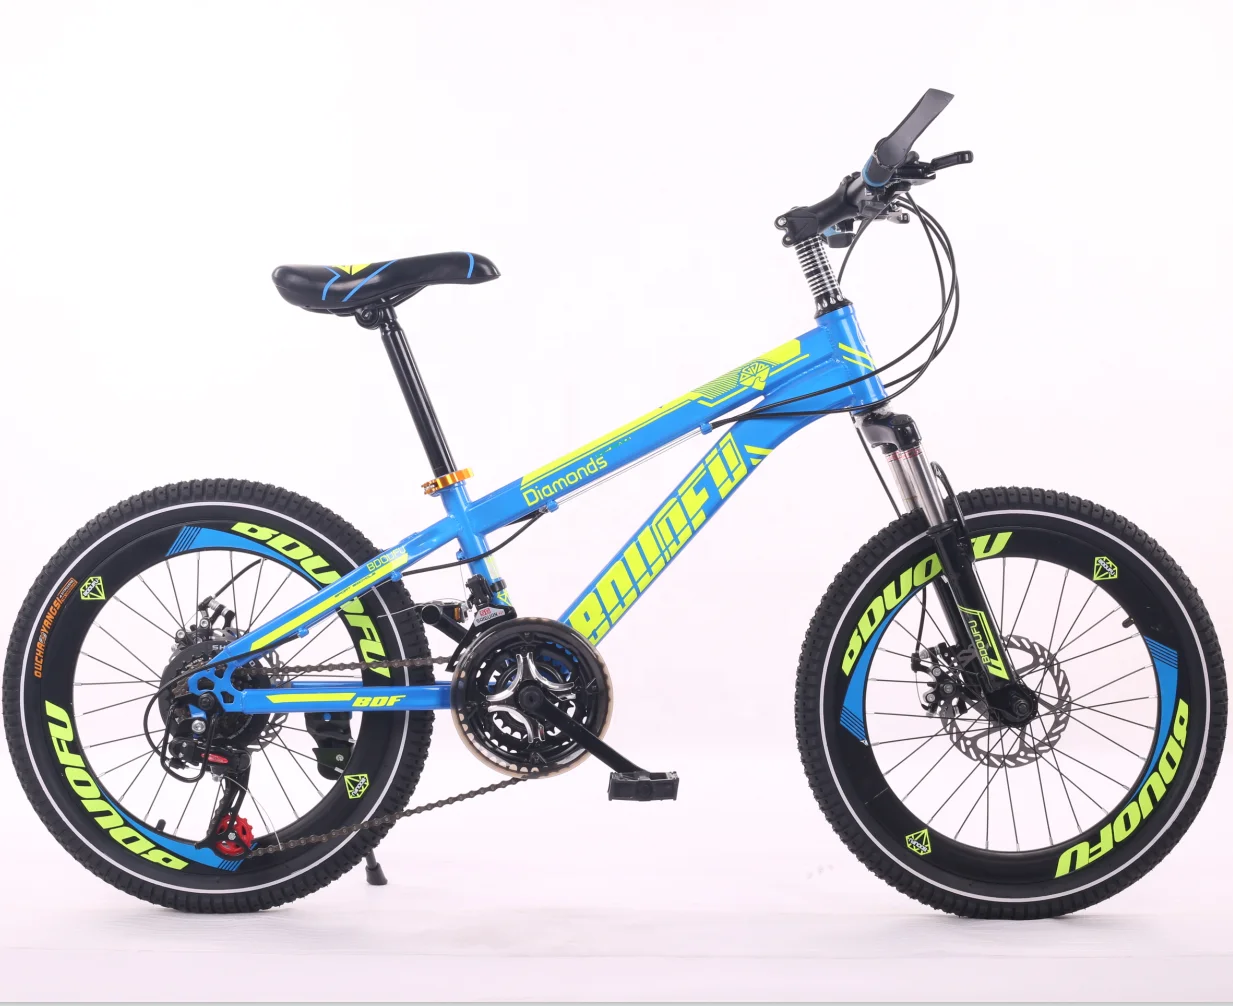 Купить велосипед мальчику 12 лет. BMX GTR 29 велосипед. Велосипед Твиттер МТБ, для детей 10 лет карбон. Велосипед для мальчика 10 лет. Скоростной велосипед для мальчика 10 лет.